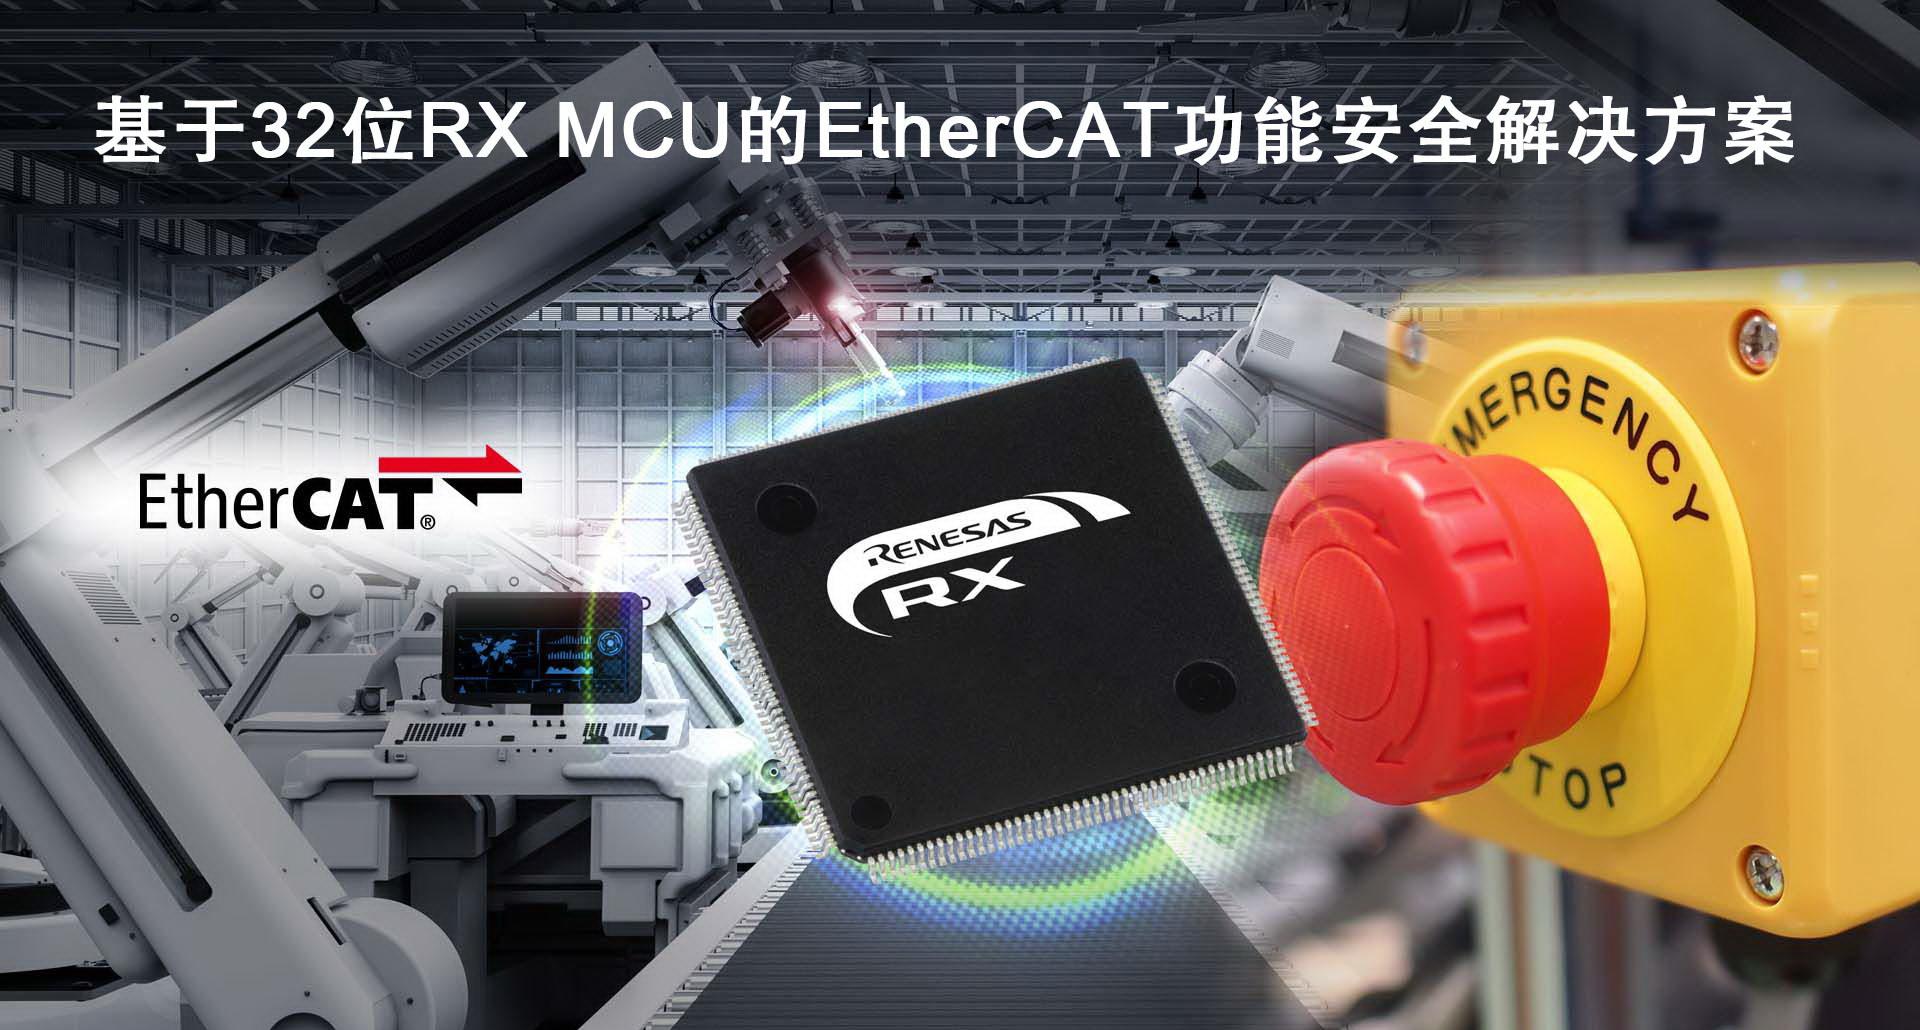 基于32位RX MCU的EtherCAT功能安全解决方案.jpg